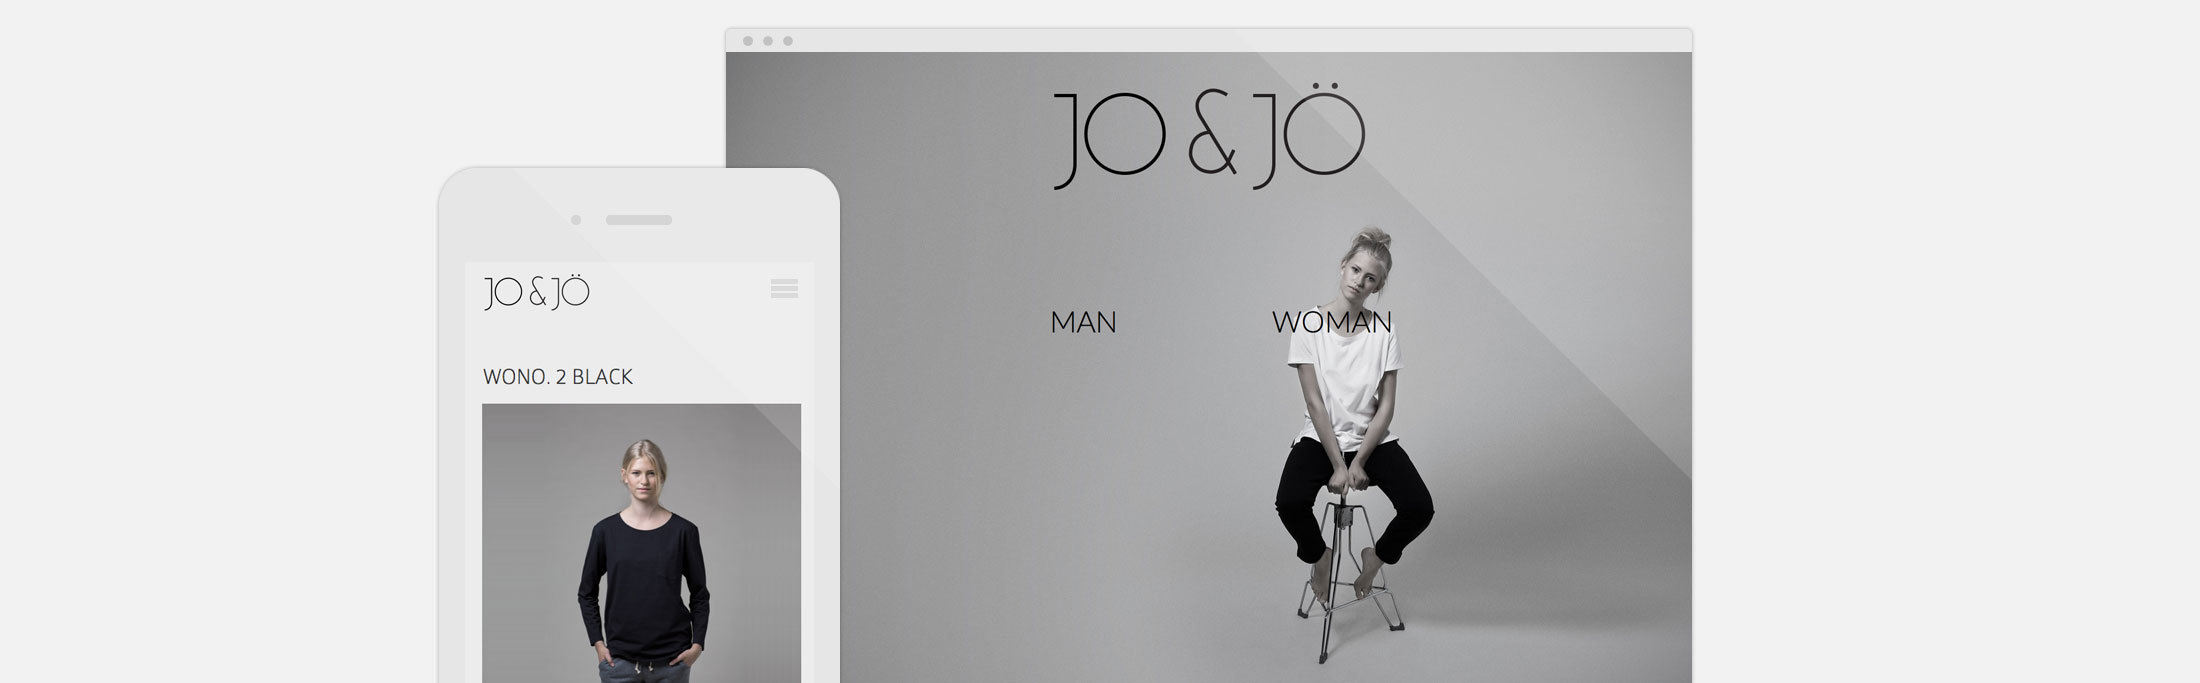 Fashion hjemmeside og webshop Jo & Jö